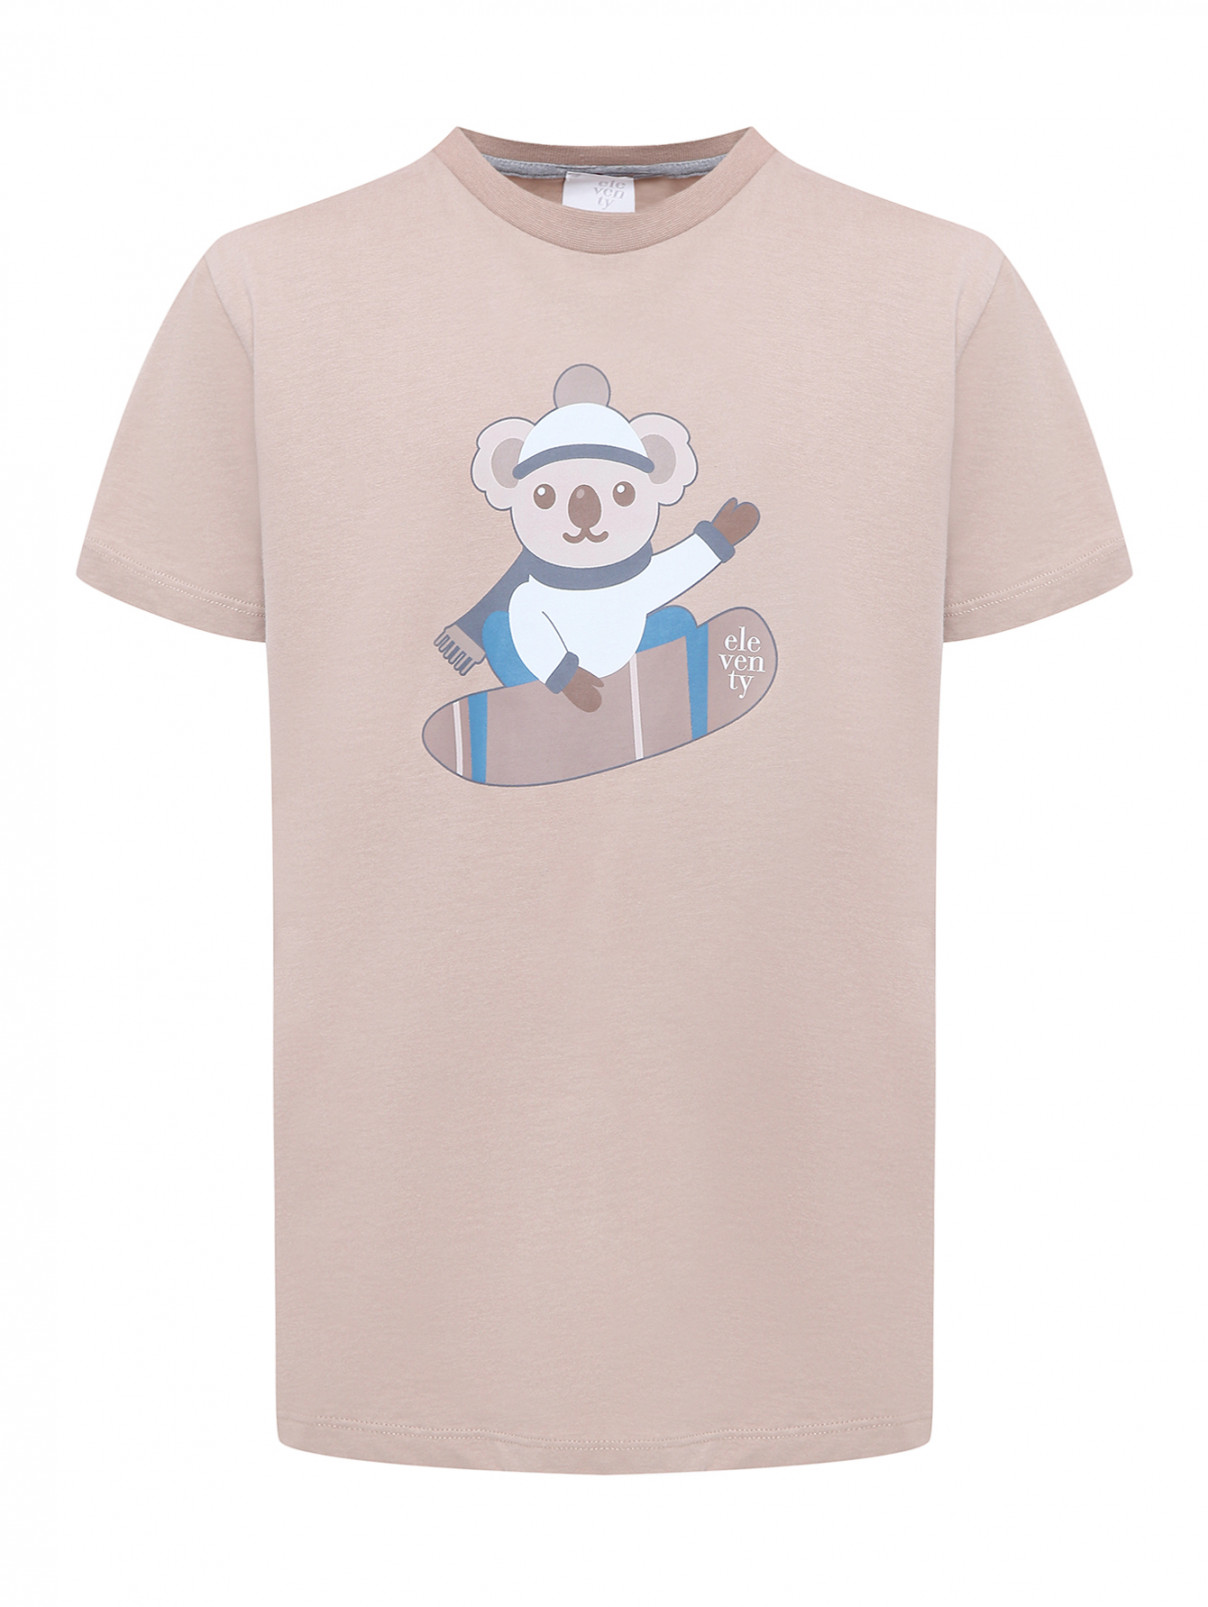 Трикотажная футболка с принтом Eleventy  –  Общий вид  – Цвет:  Бежевый